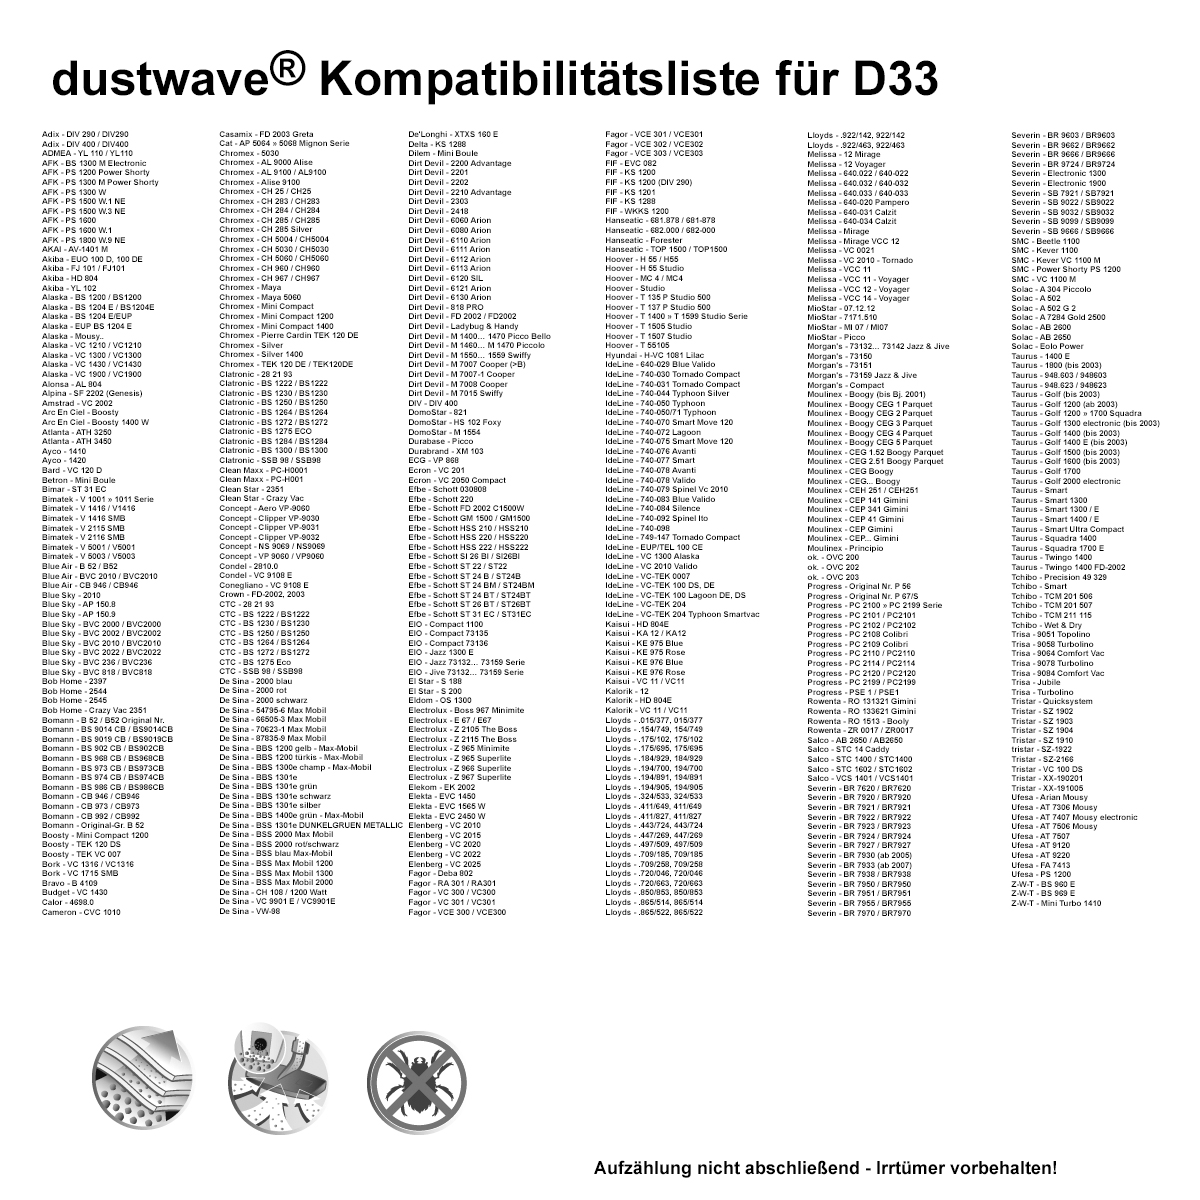 Dustwave® 20 Staubsaugerbeutel für Budget VC 1430 - hocheffizient, mehrlagiges Mikrovlies mit Hygieneverschluss - Made in Germany